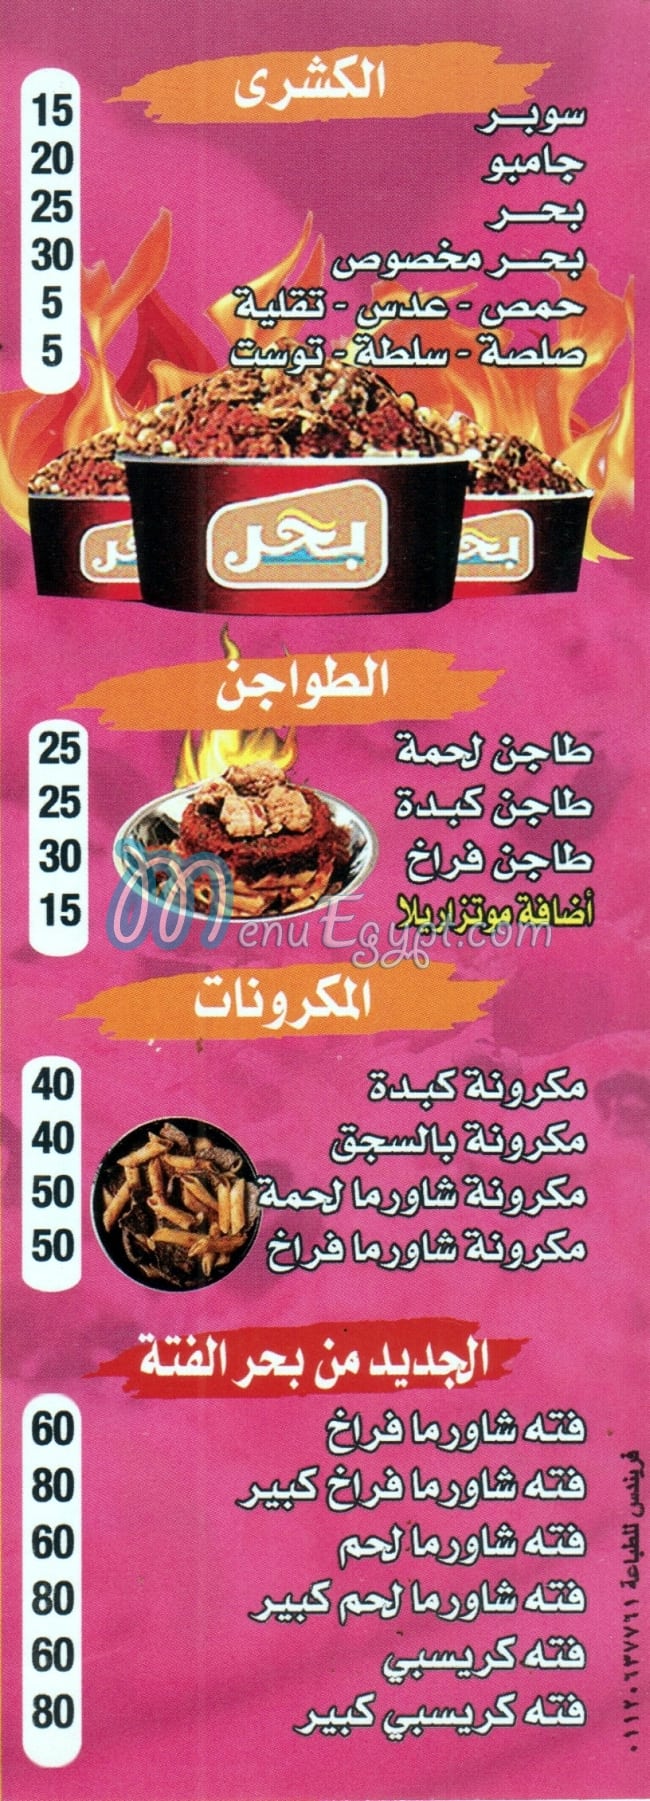 مطعم بحر مصر